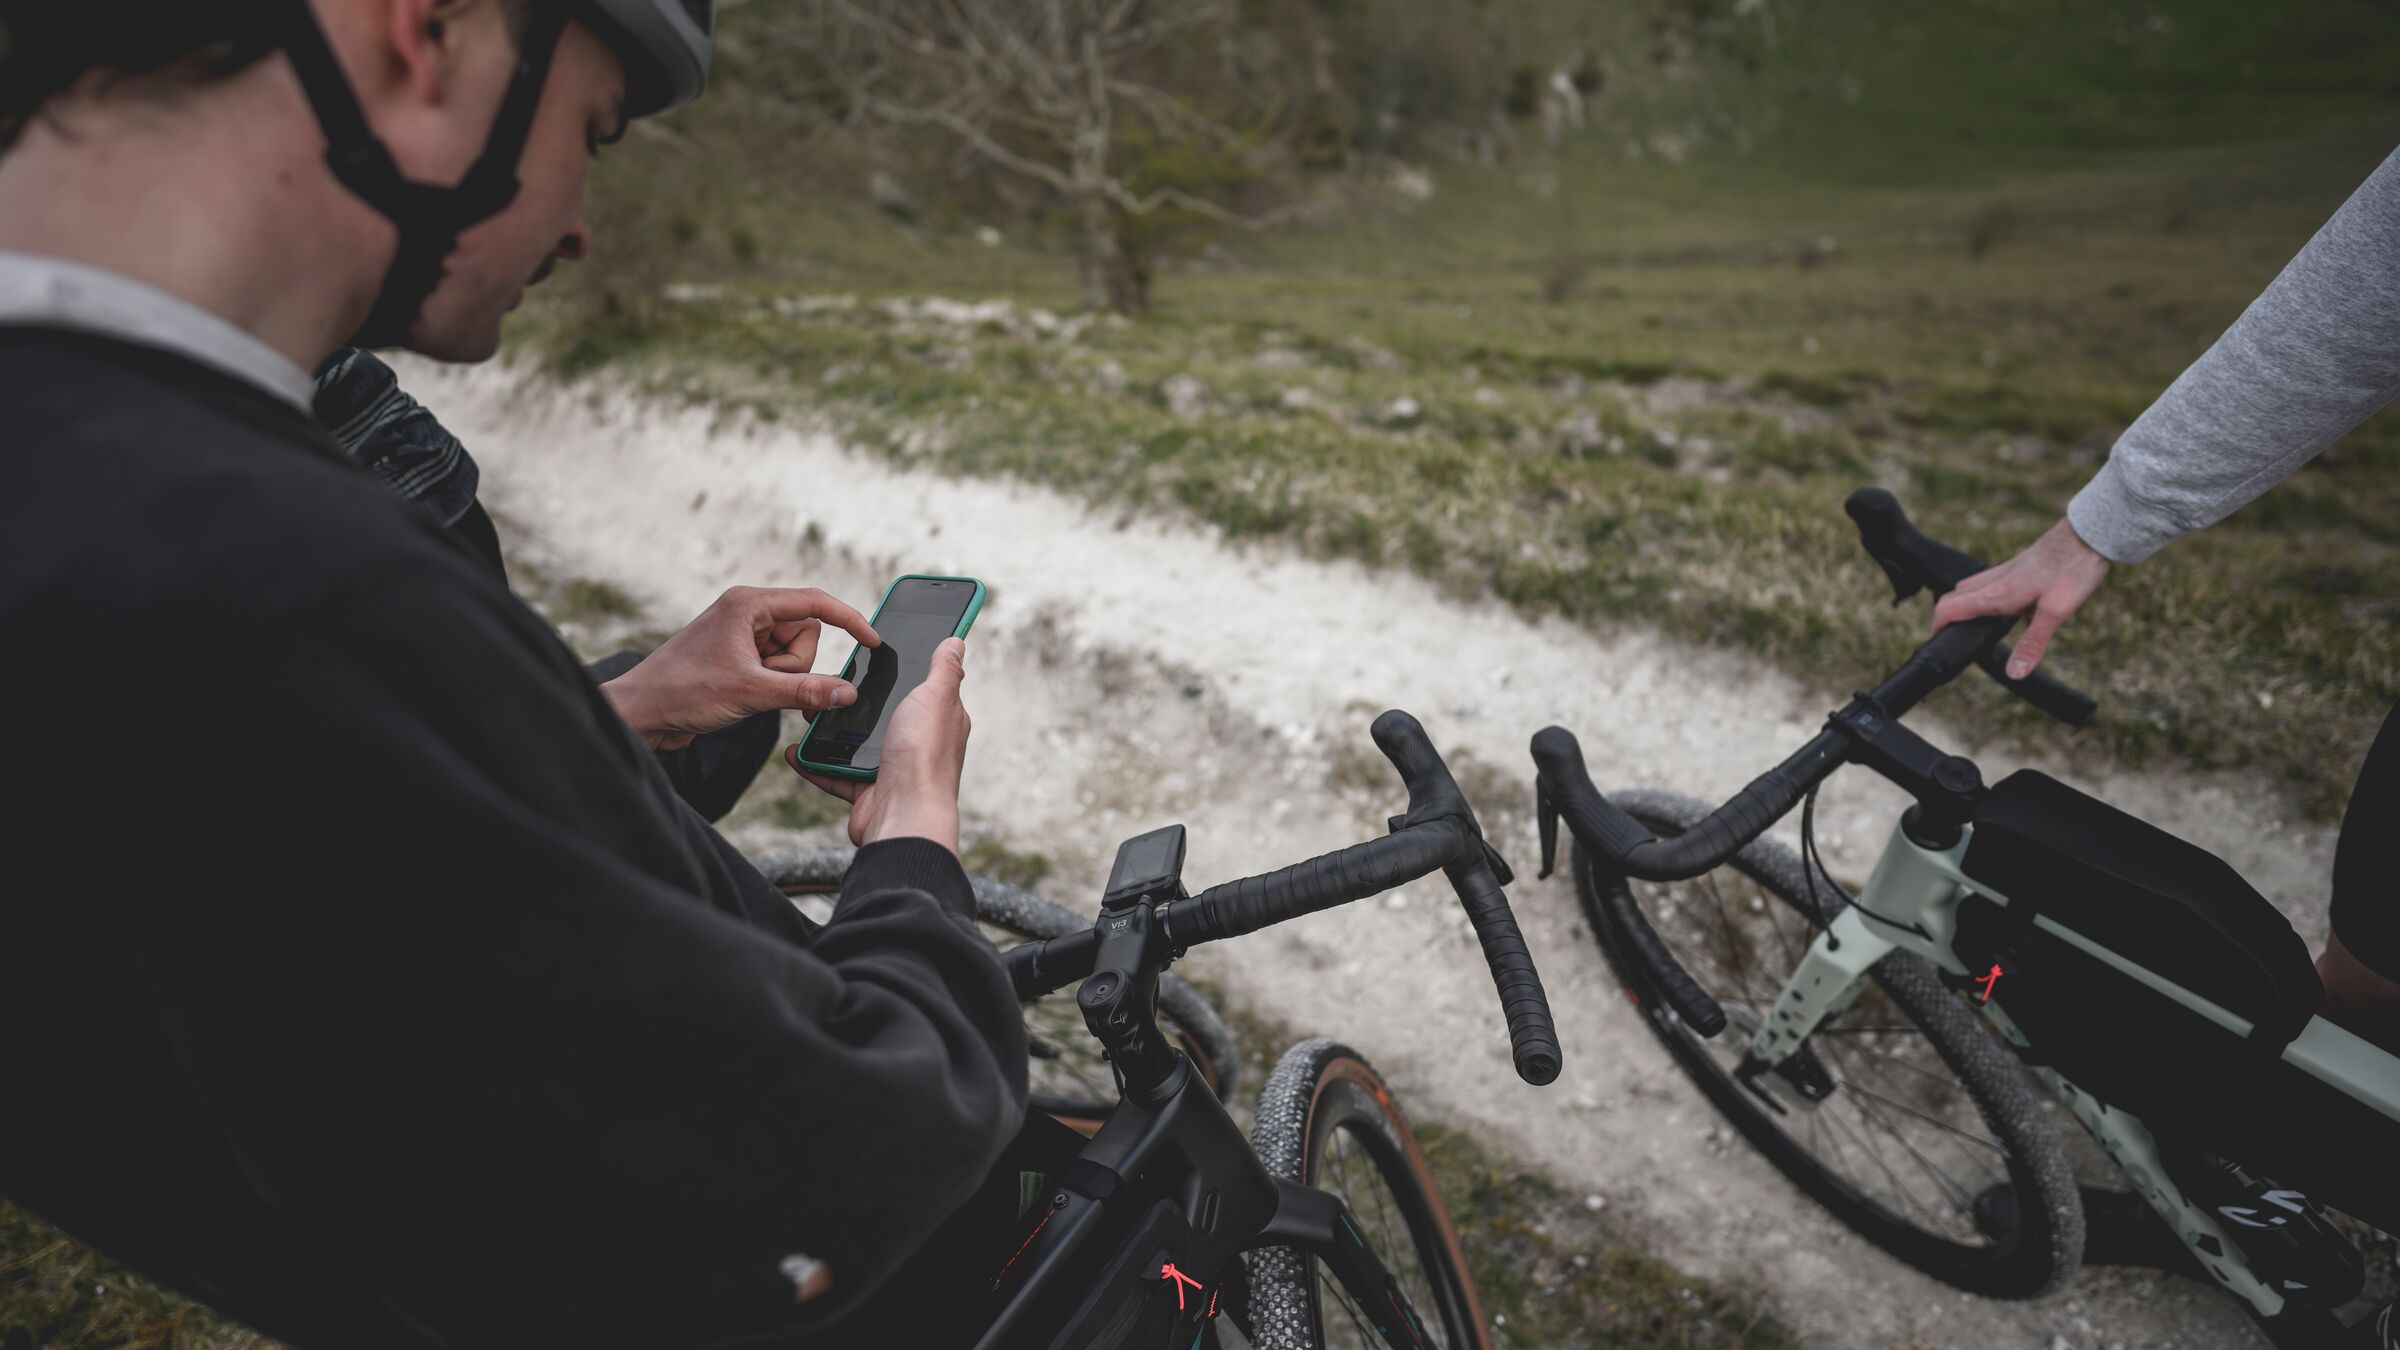 Fahrrad-Navi-Apps: Immer die richtige Route auf dem Smartphone